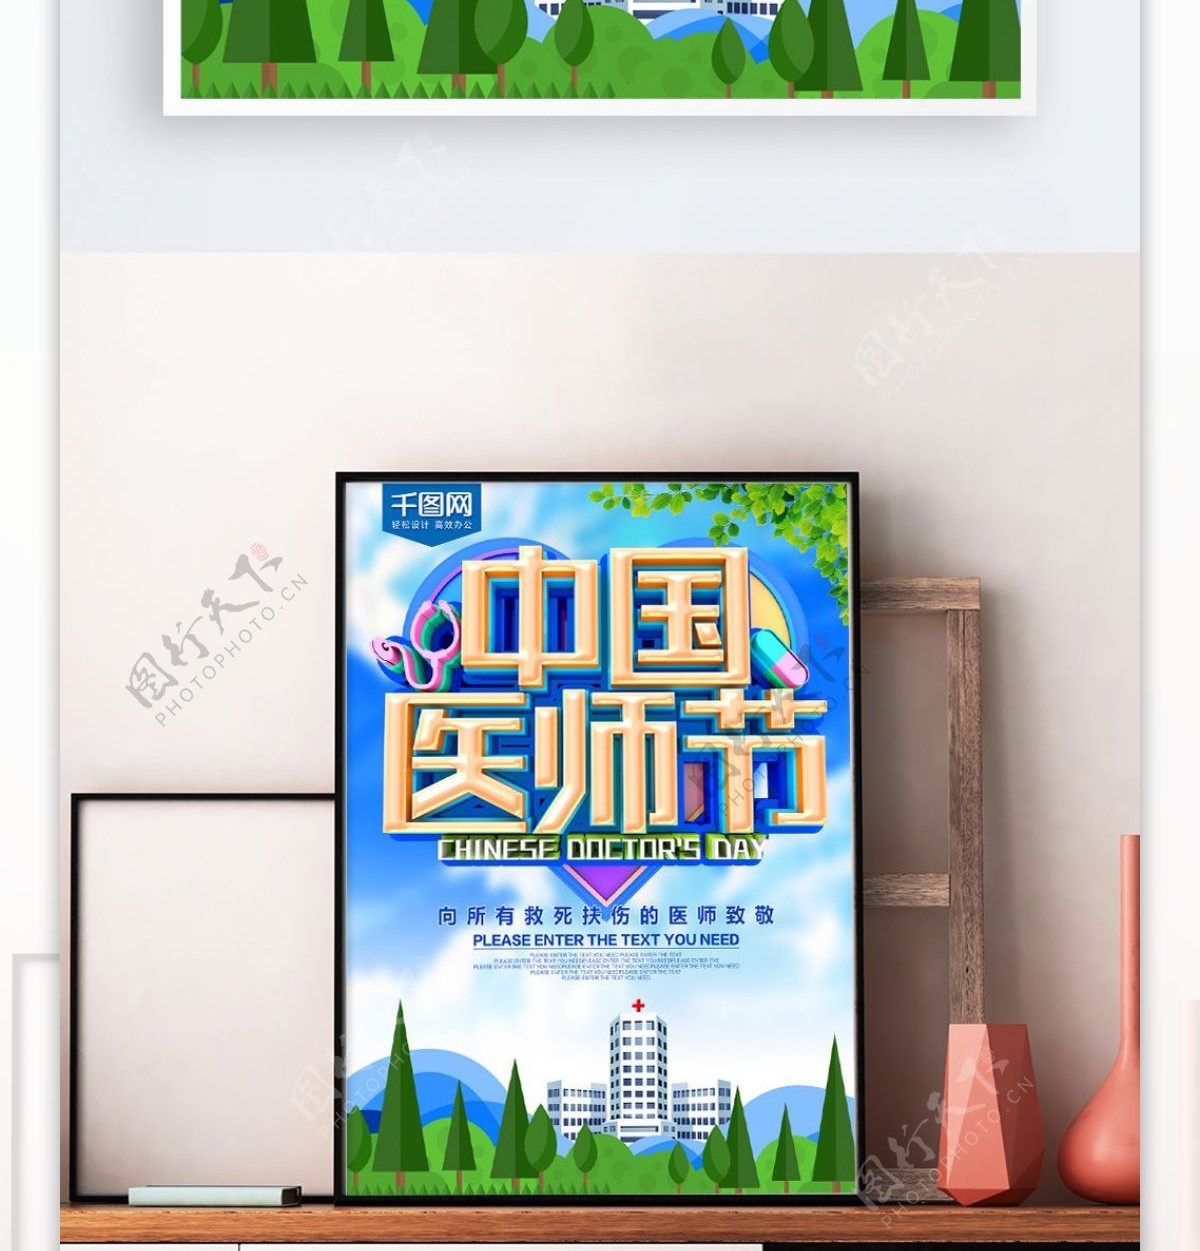 蓝色中国医师节海报